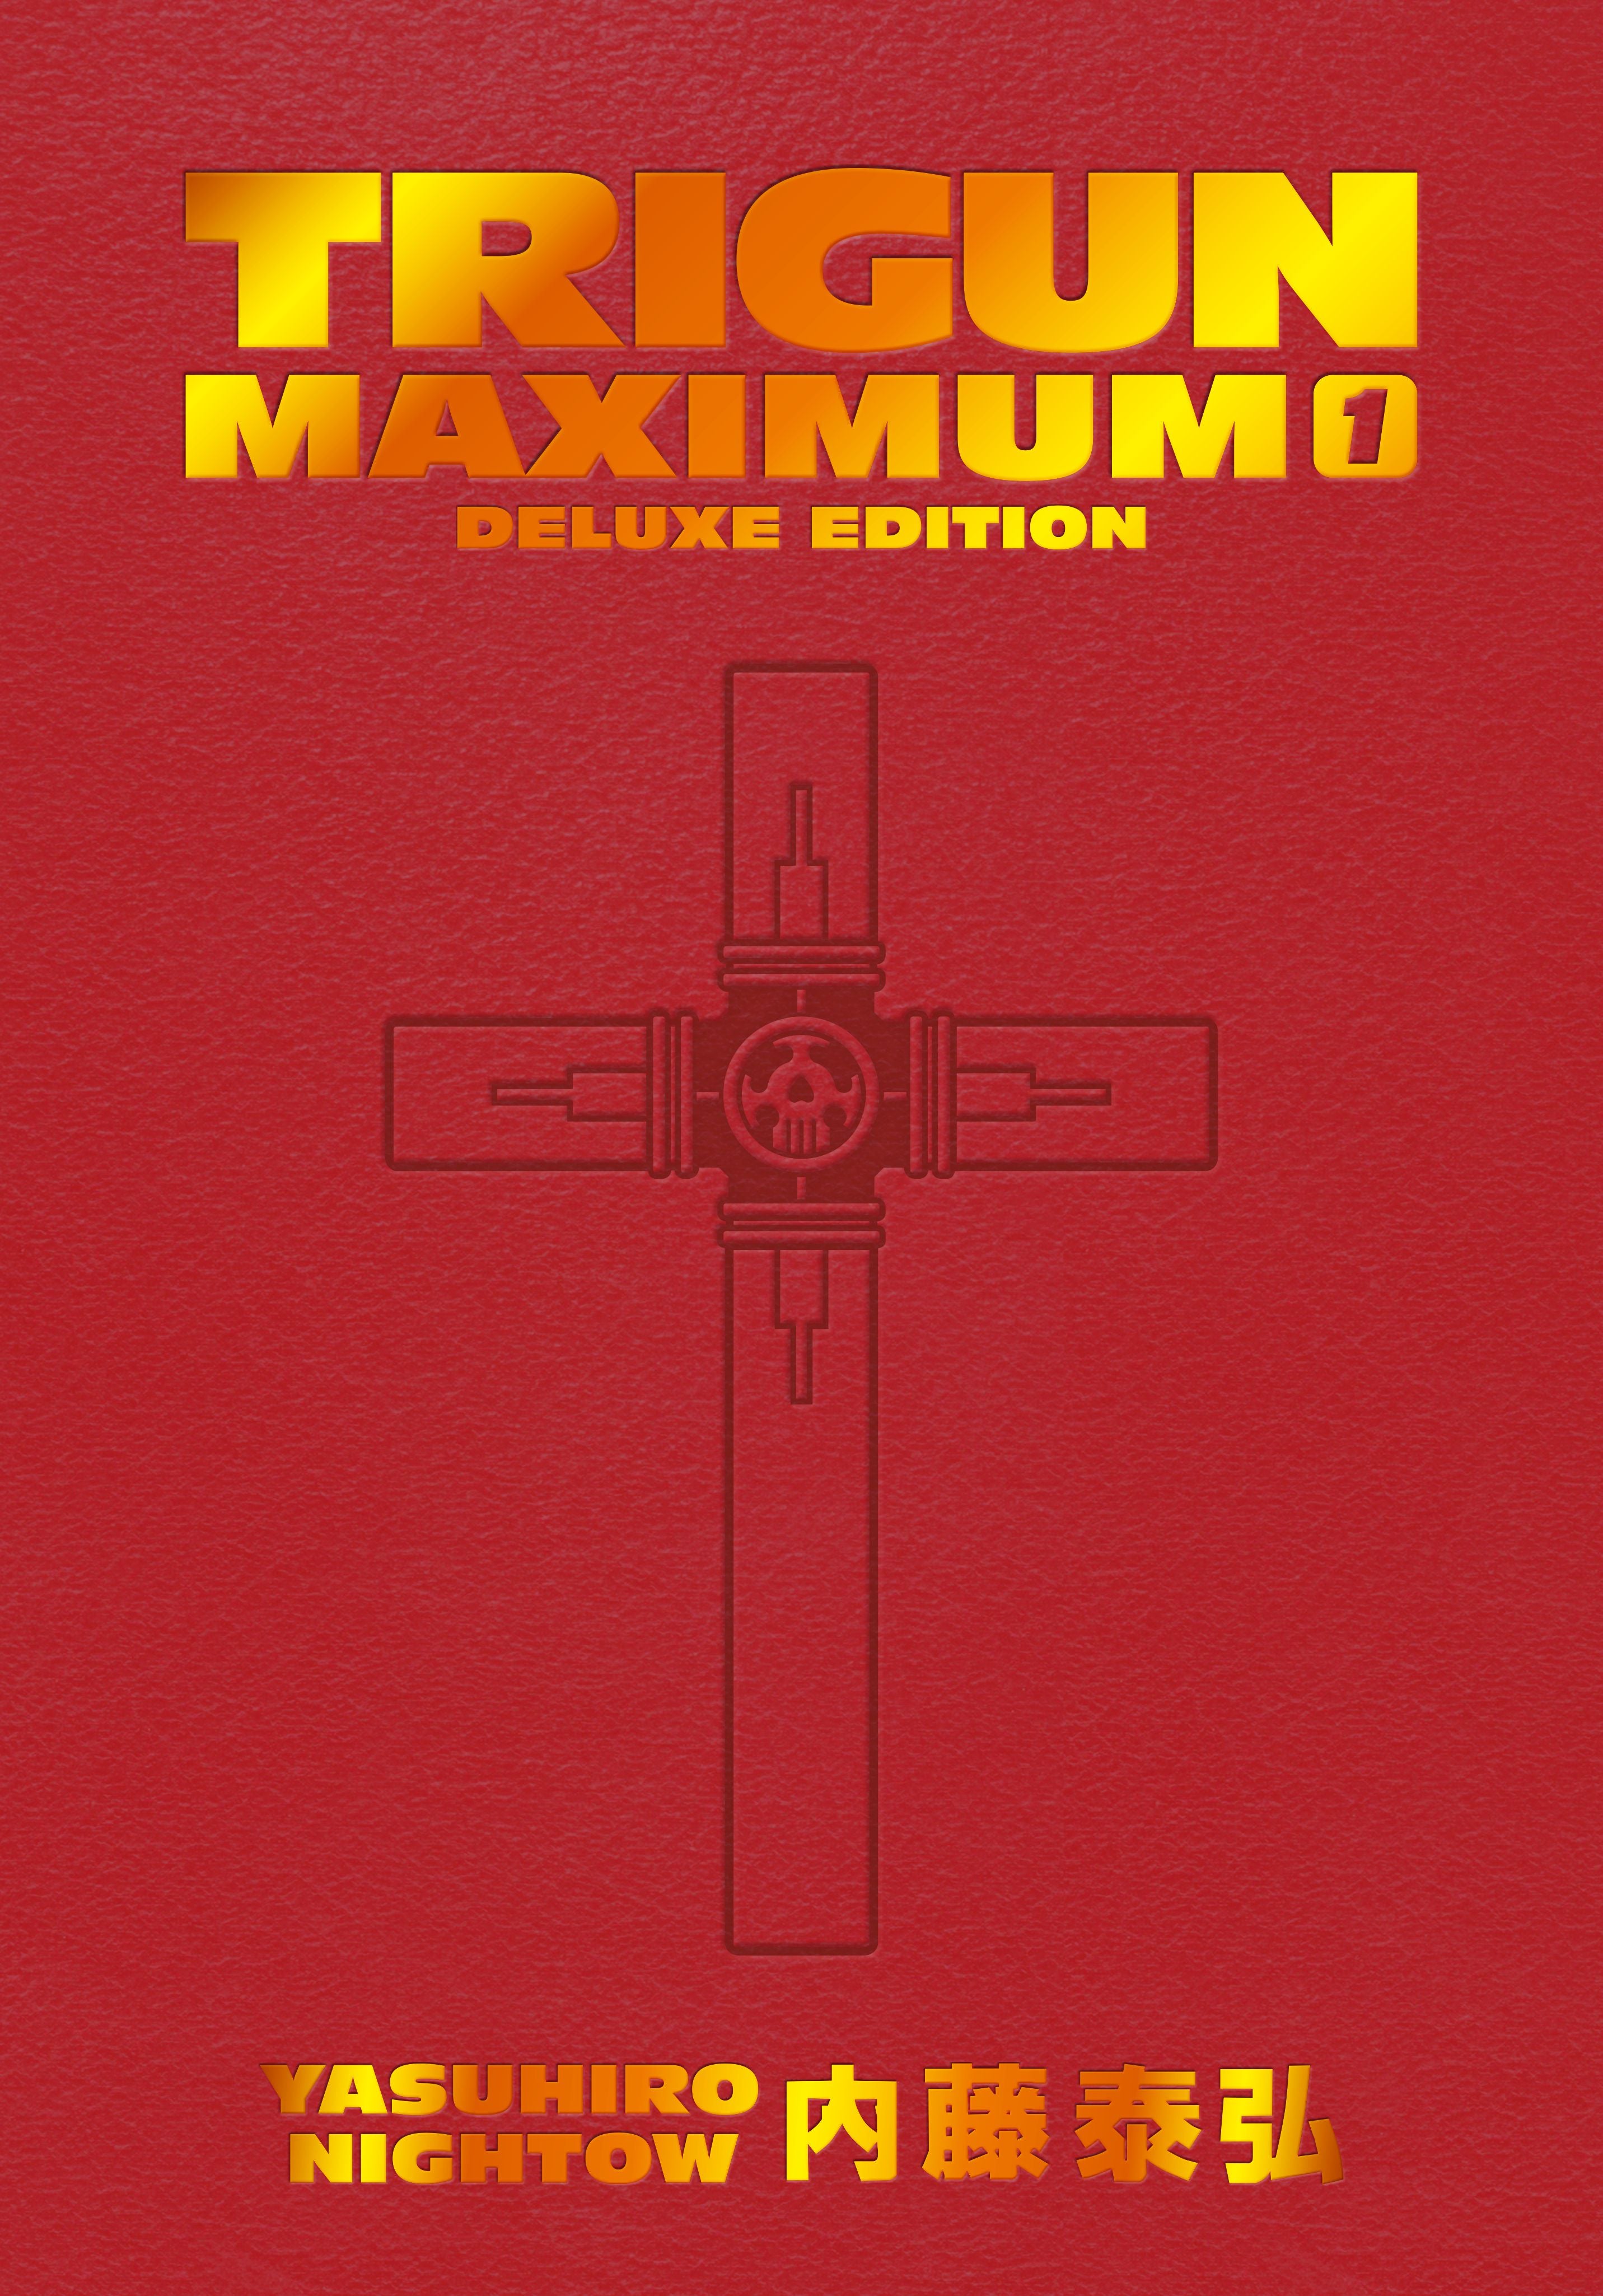 Trigun Maximum Deluxe Edition Volume 1 | BD Cosmos